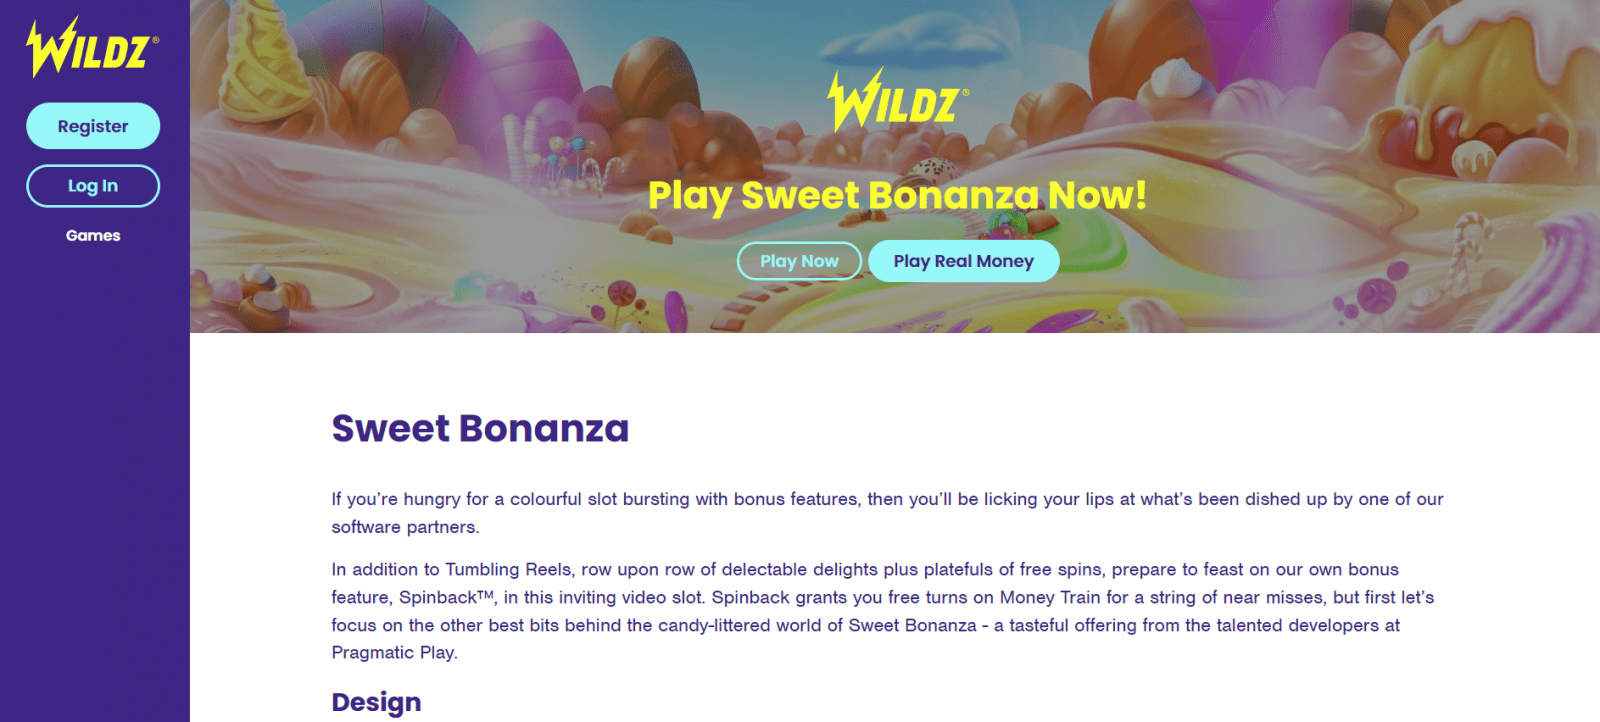 العب Wildz Sweet Bonanza